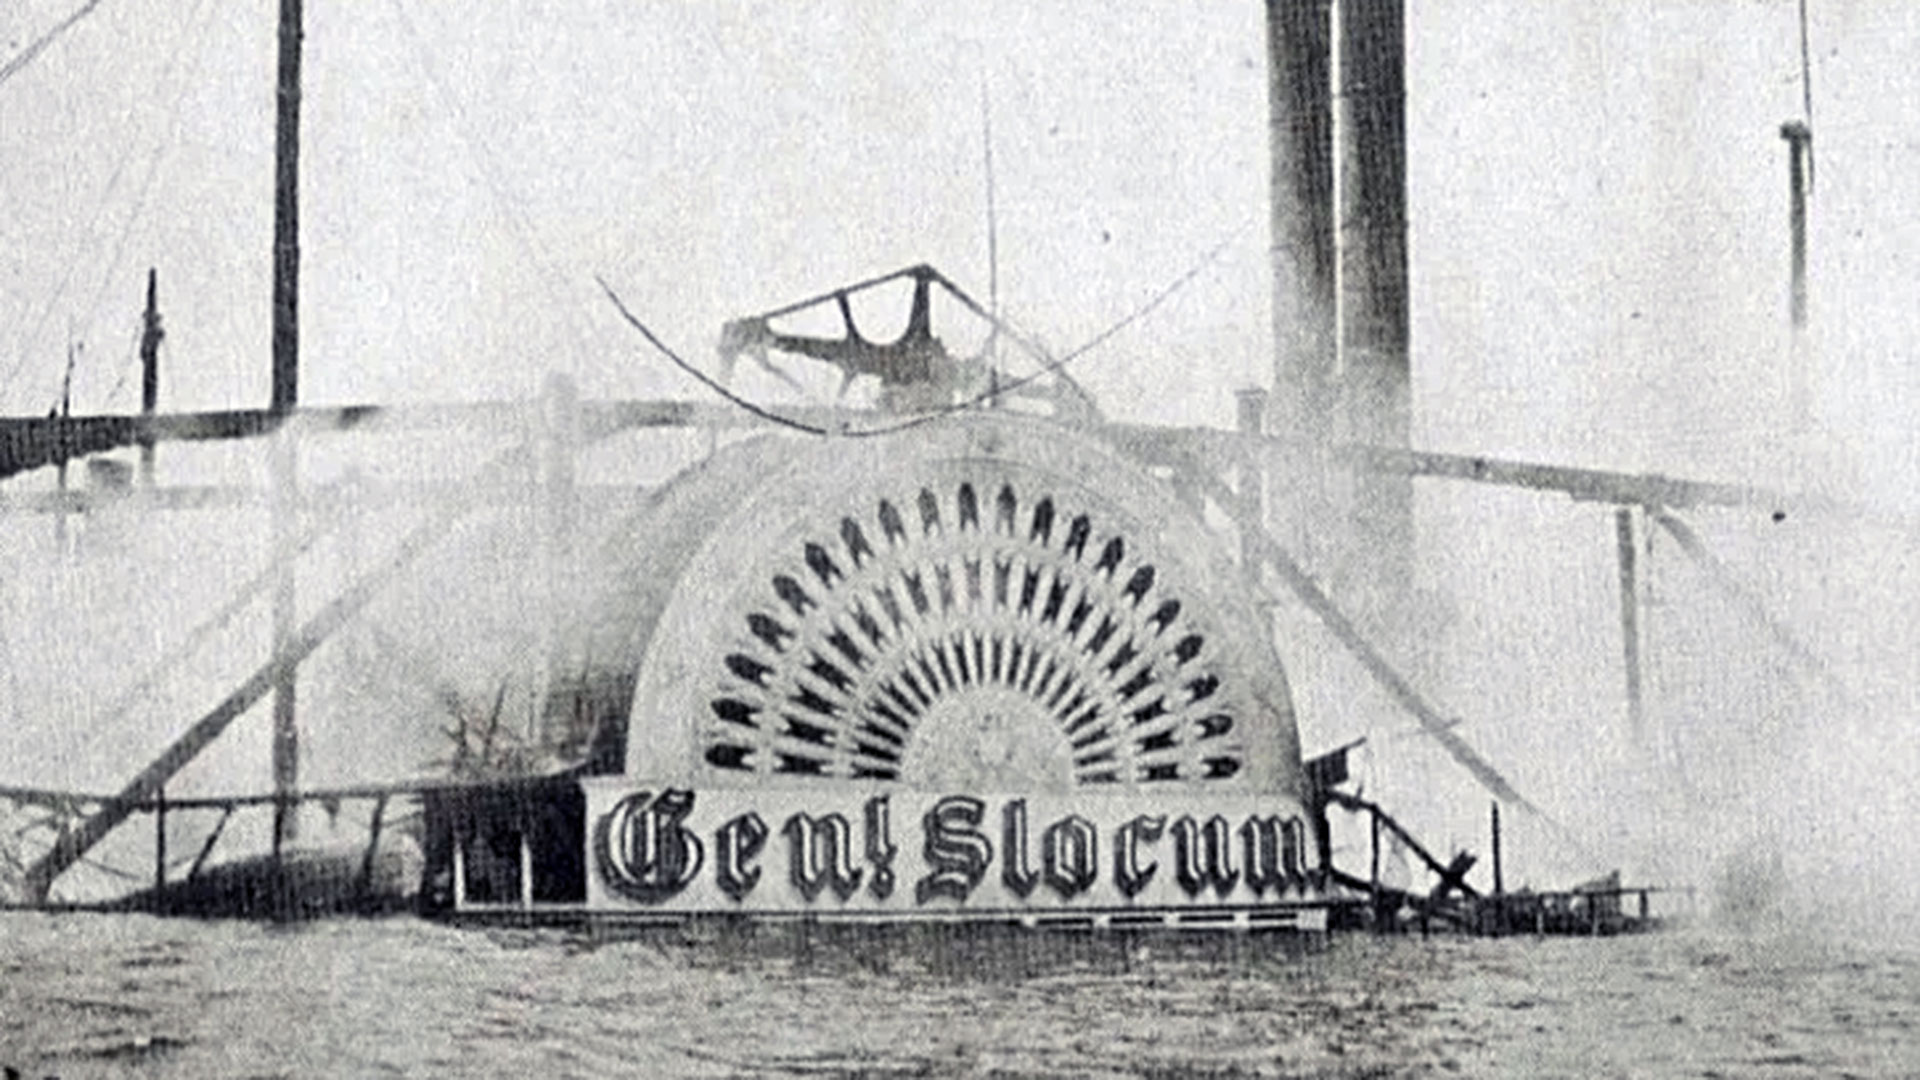 La catástrofe del General Slocum: 1021 niños y maestros muertos en la peor tragedia naval antes del Titanic